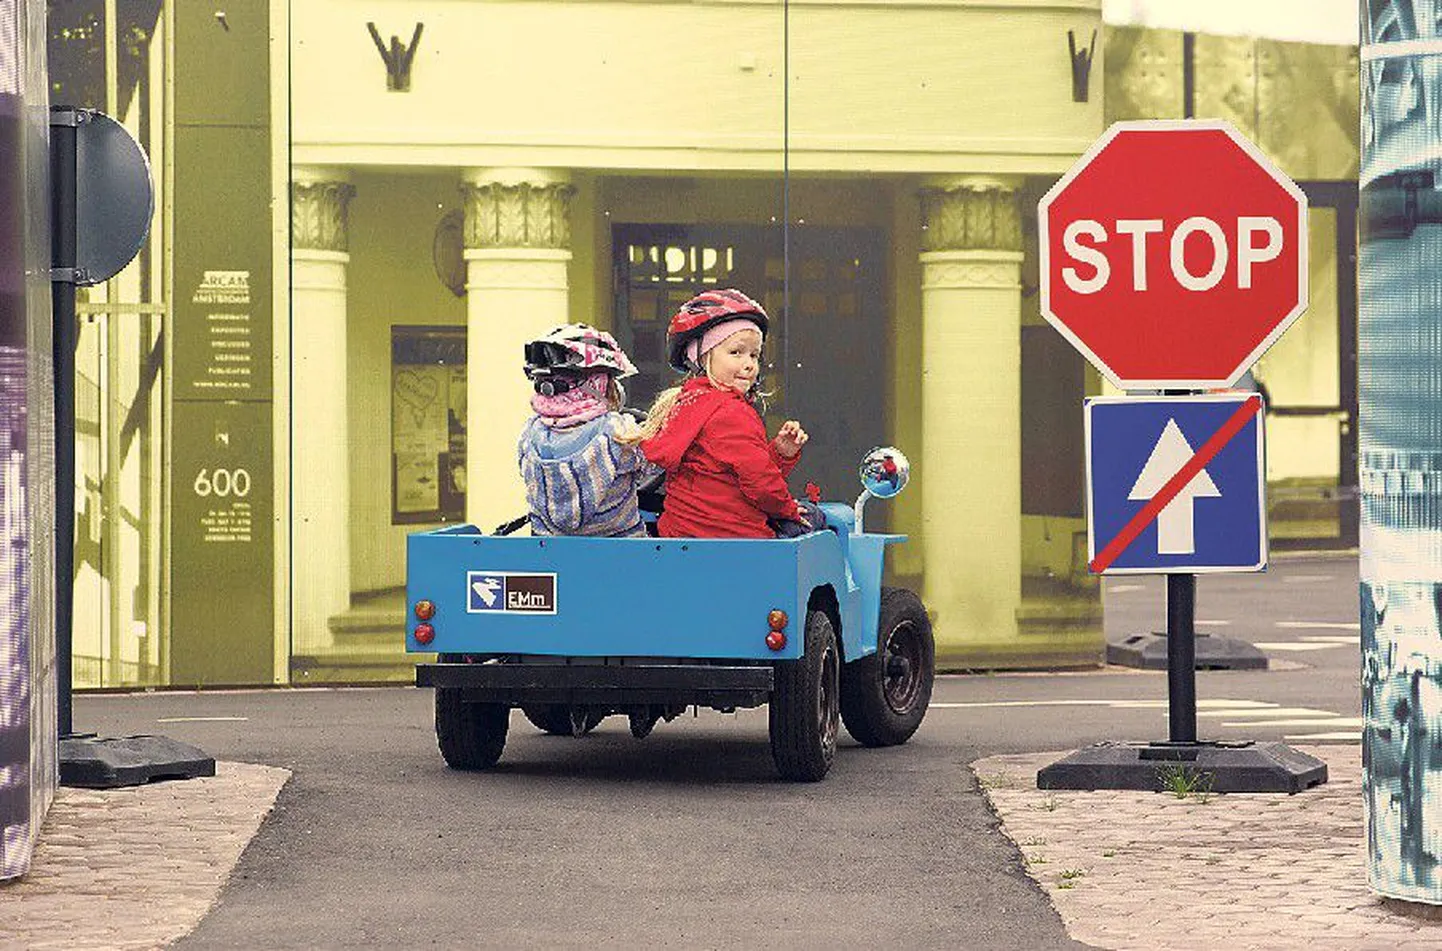 Ise rooli: Eesti kõige peresõbralikumaks muuseumiks valitud maanteemuuseumis saab autodega ringi 
sõita.